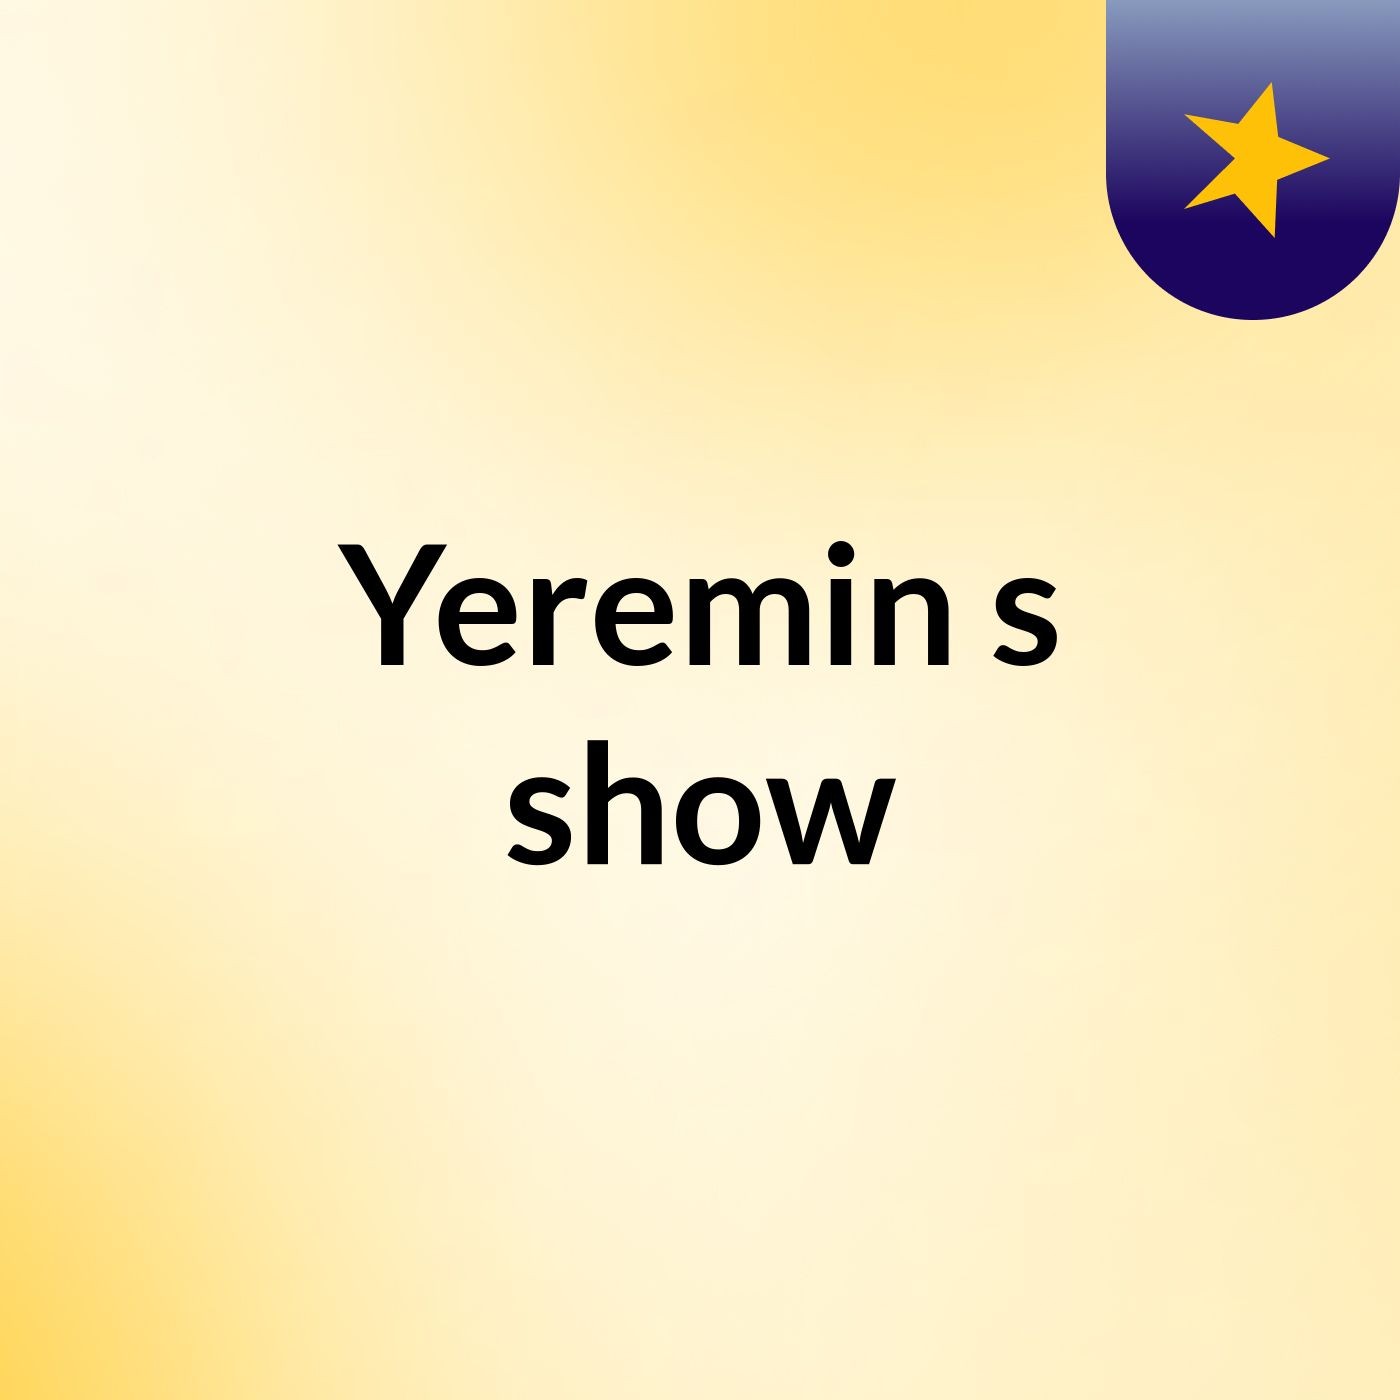 Yeremin's show